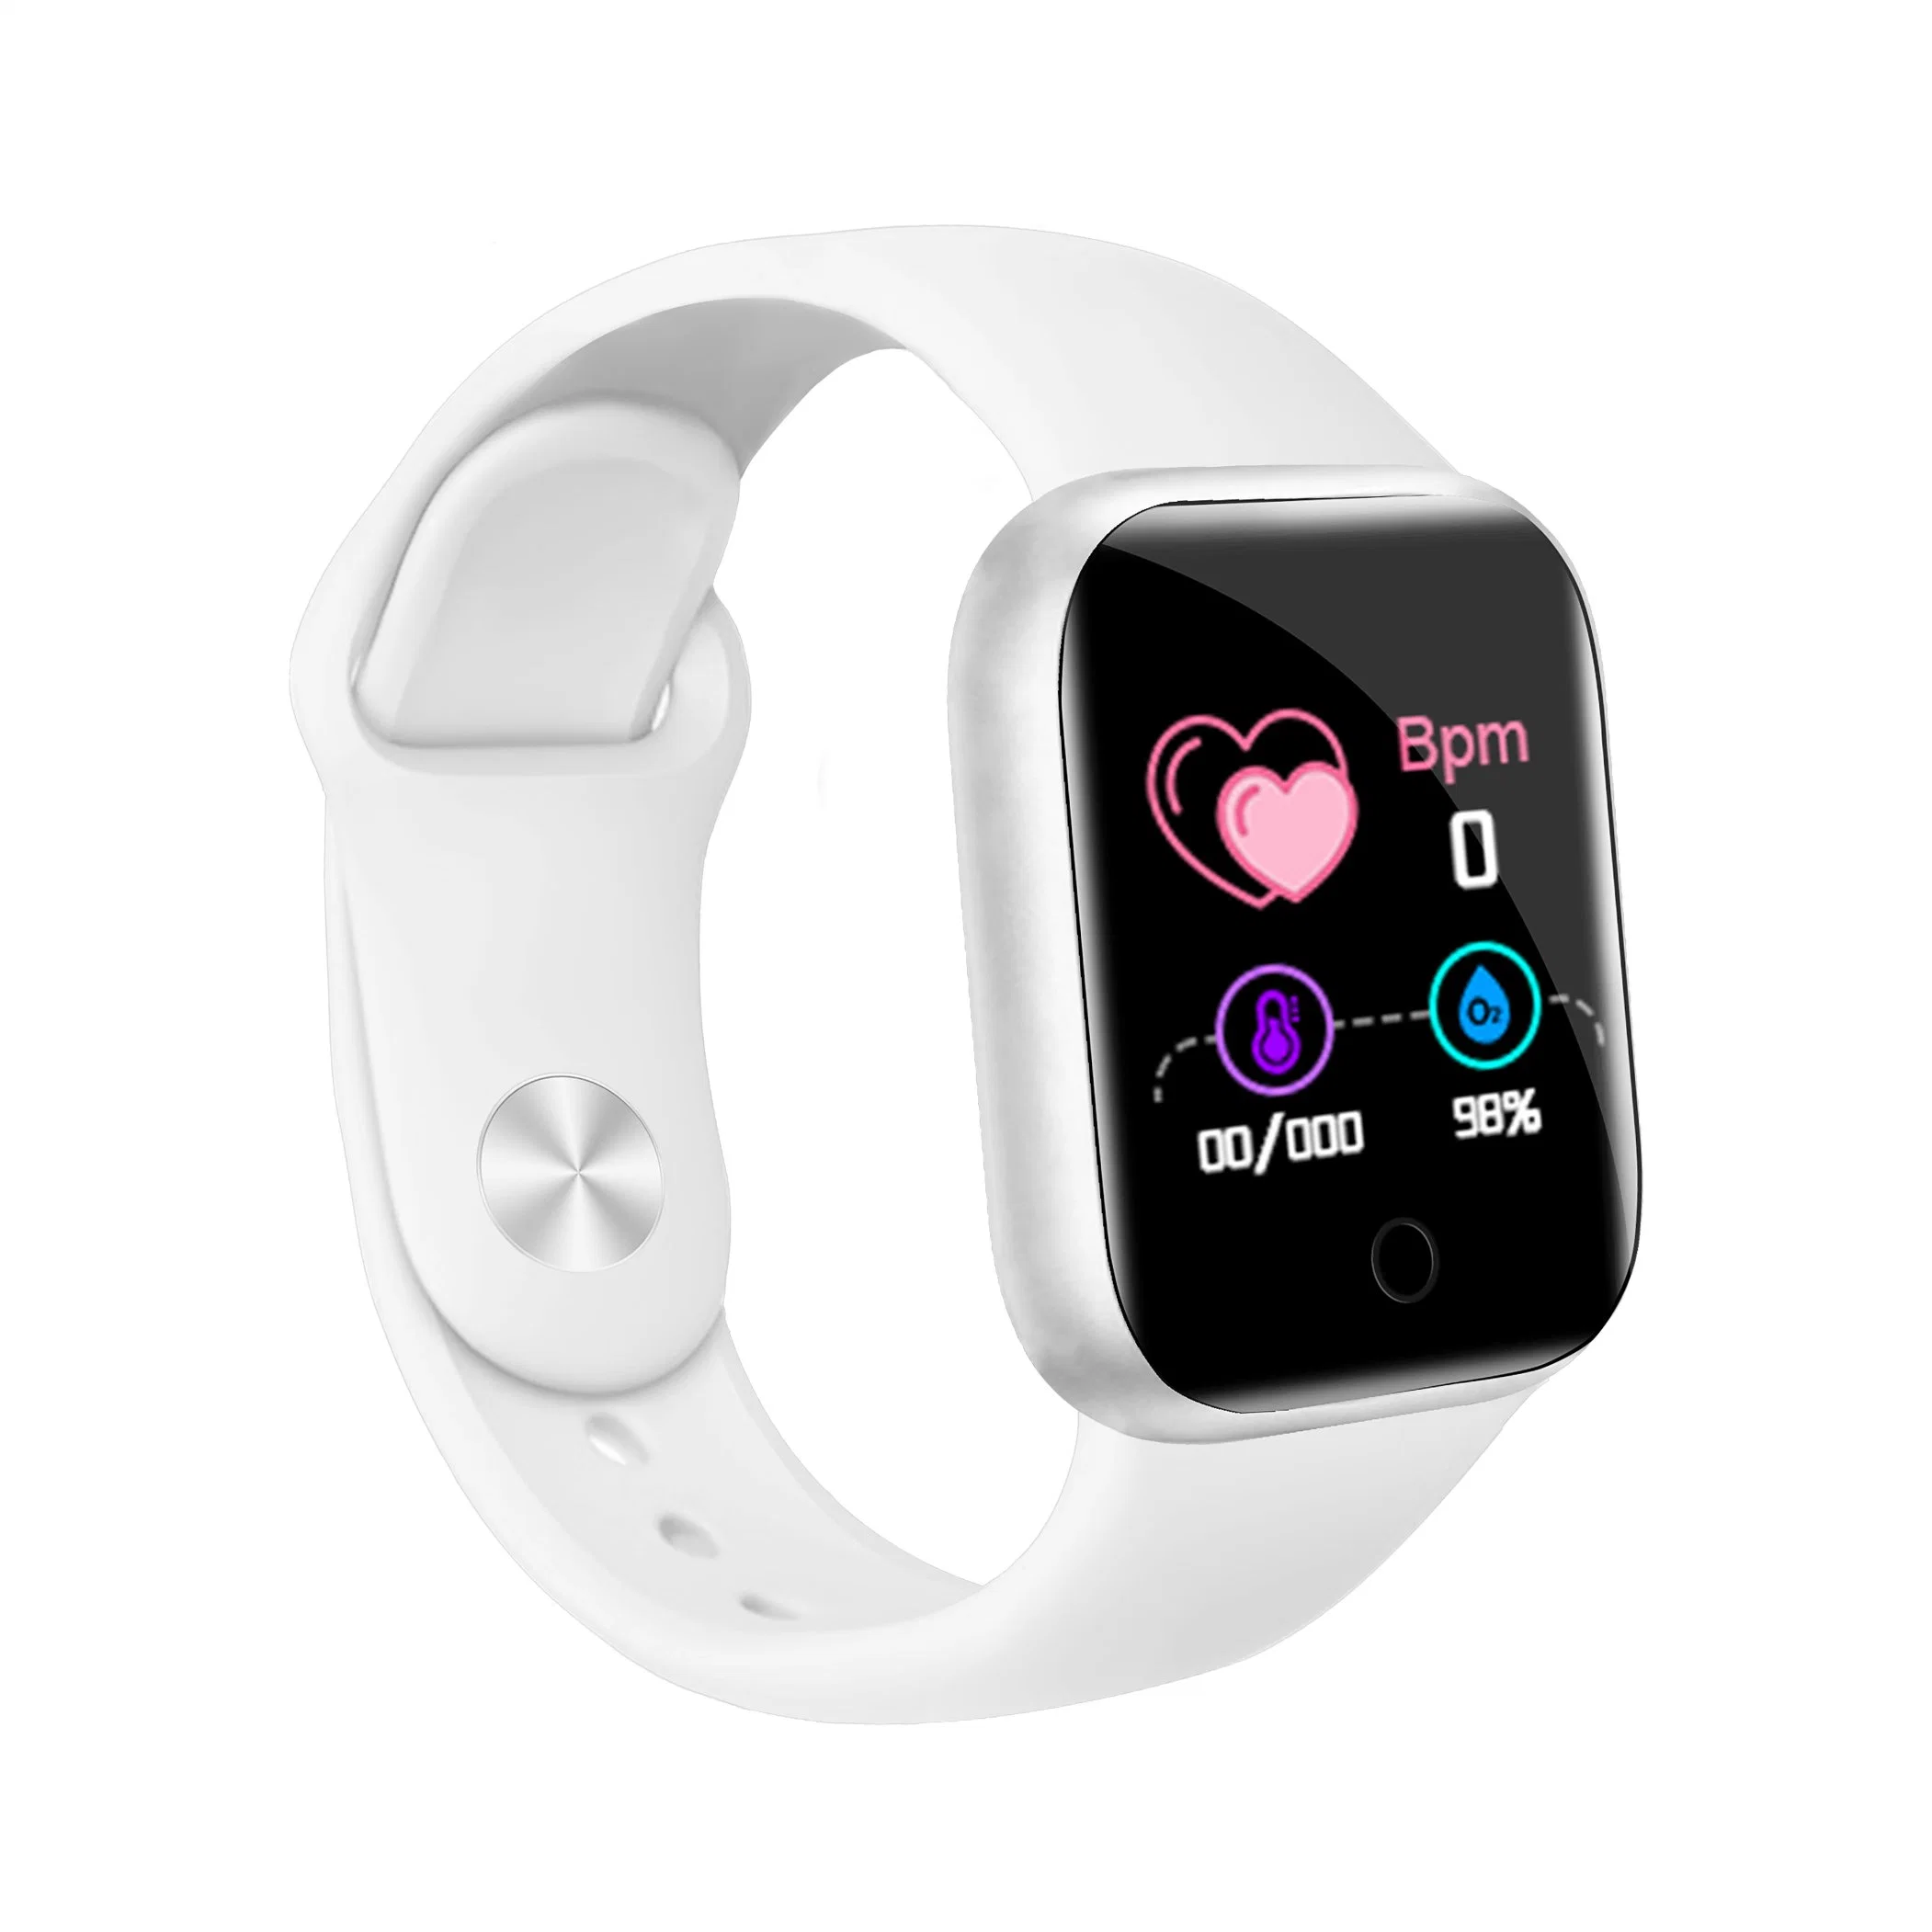 Heißer Verkauf Reloj intelligente Smart Watch Y68 Gesundheit Fitness Tracker Armband D20 Smartwatch Y68s